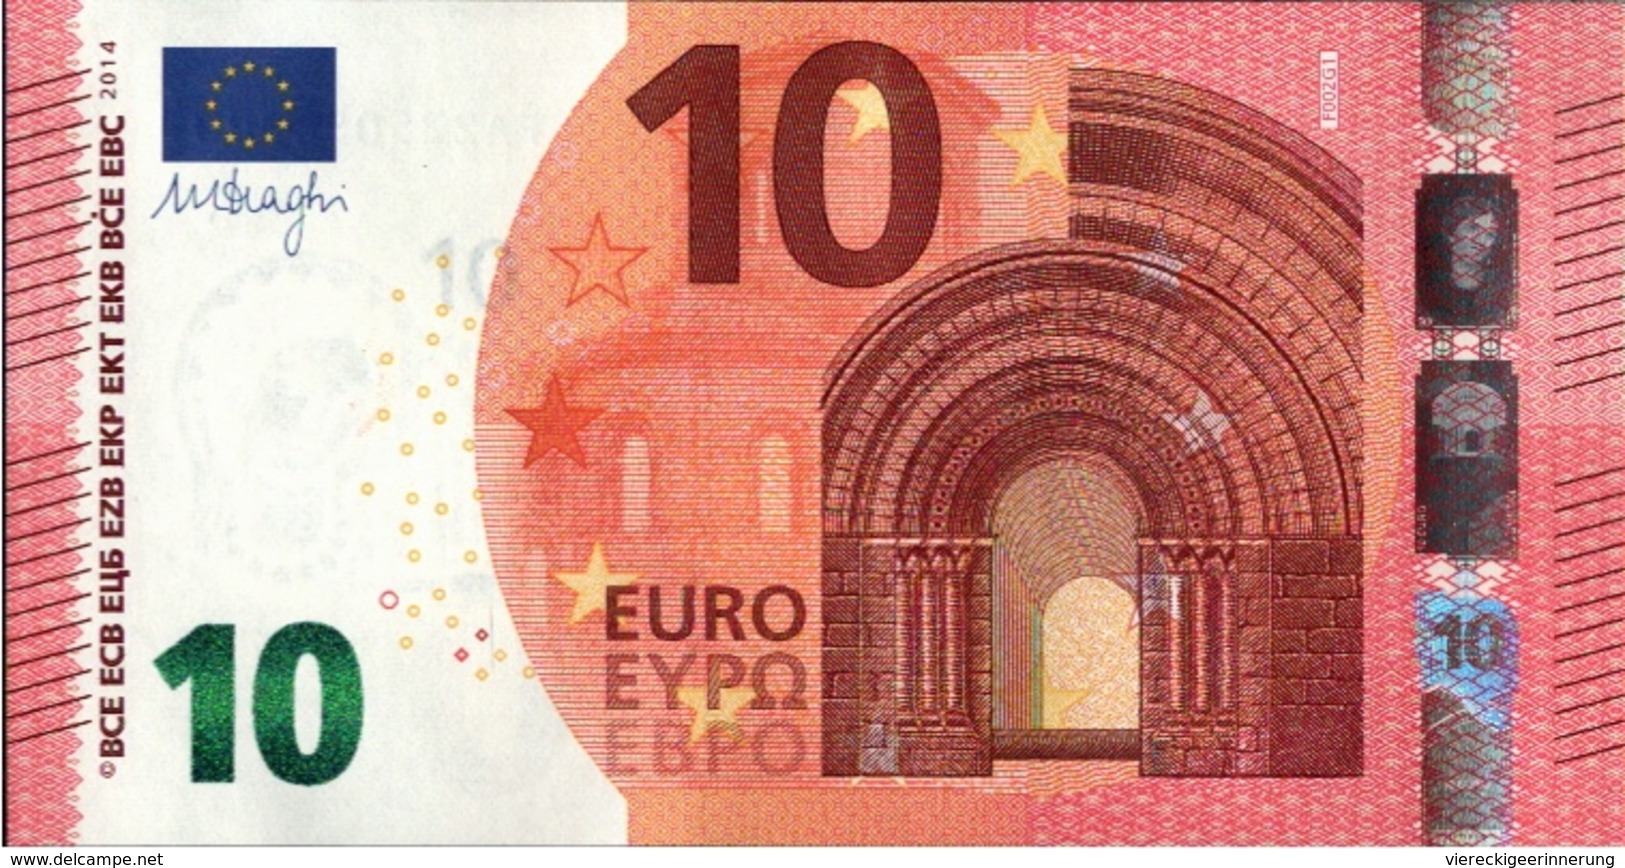 ! 10 Euro, F002G1, Money, Geldschein, Banknote FA2250540009, Mario Draghi, EZB, ECB, Europäische Zentralbank - 10 Euro